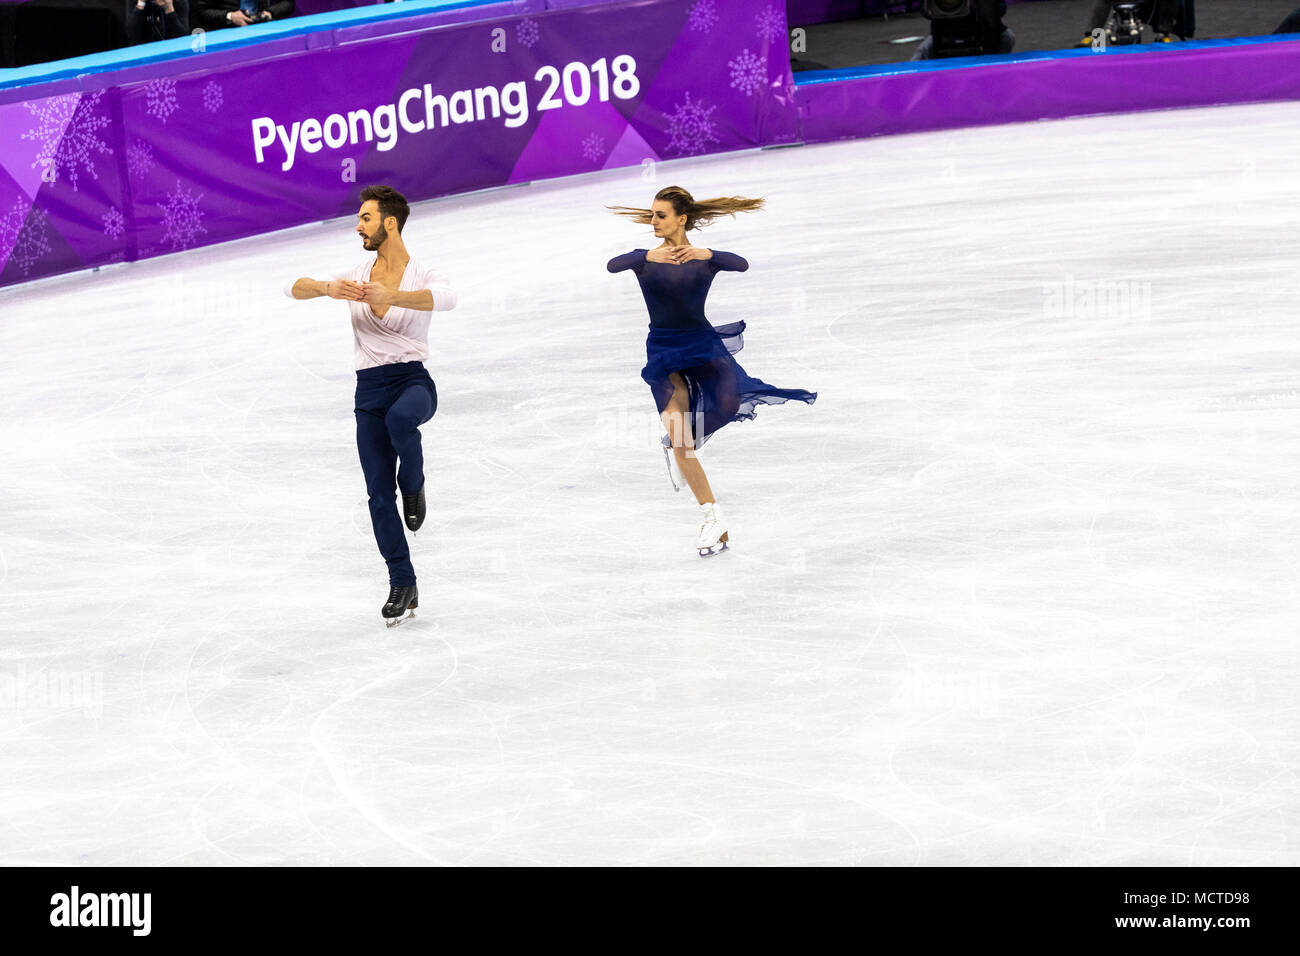 Gabriela Papadakis/Guillaume Cizeron (FRA) gagner la médaille d'argent en patinage artistique danse sur glace aux Jeux Olympiques d'hiver de PyeongChang 2018 Banque D'Images